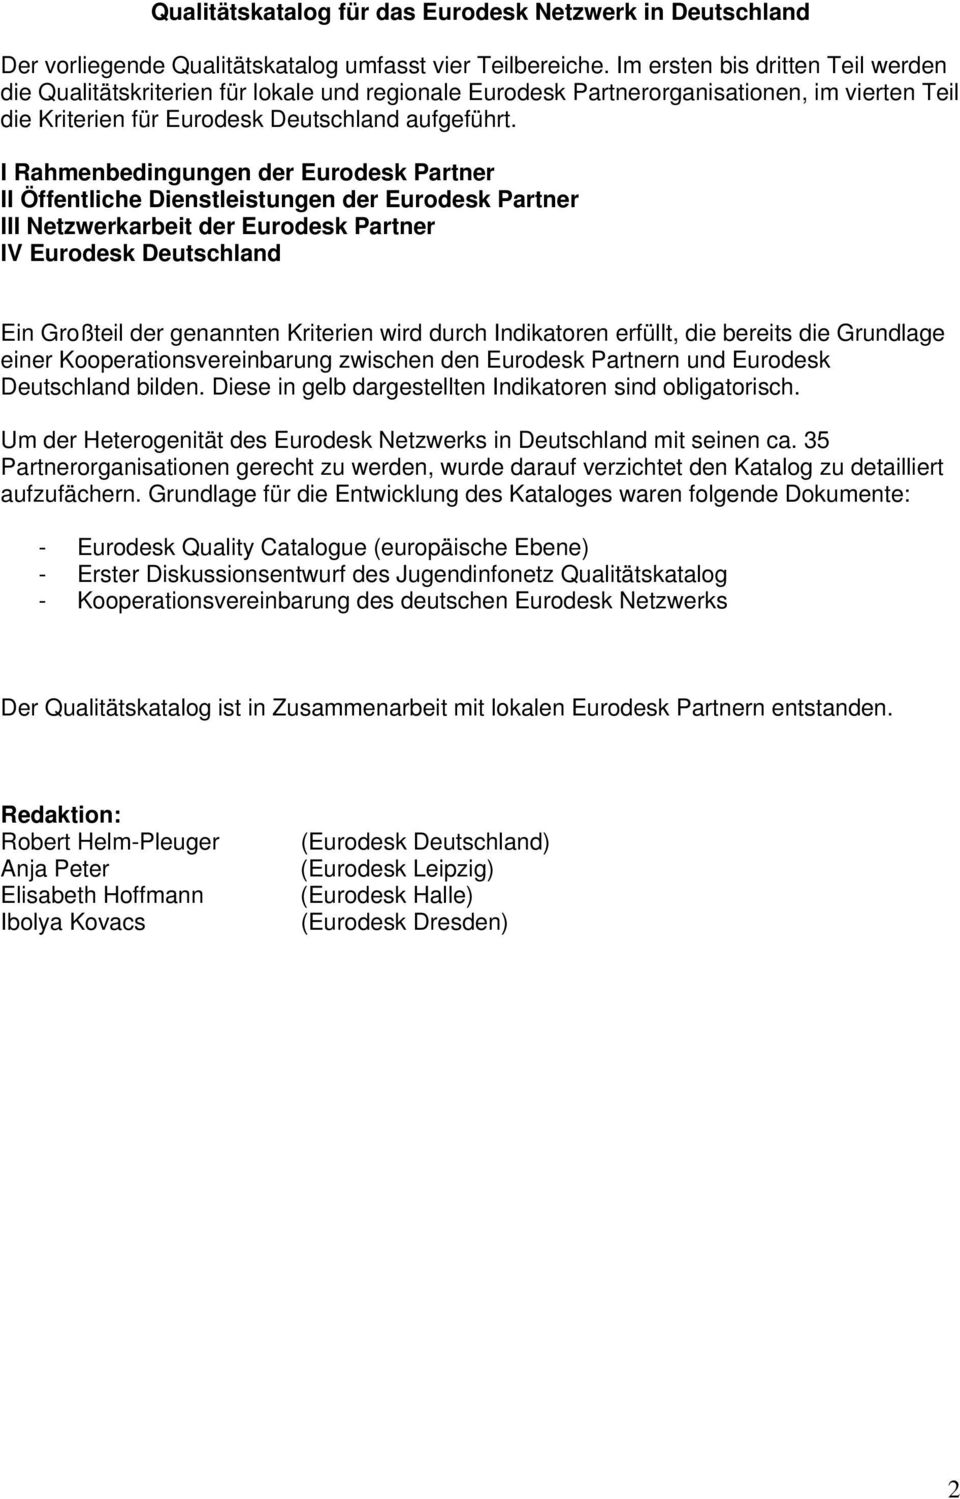 I Rahmenbedingungen der Eurodesk Partner II Öffentliche Dienstleistungen der Eurodesk Partner III Netzwerkarbeit der Eurodesk Partner IV Eurodesk Deutschland Ein Großteil der genannten Kriterien wird